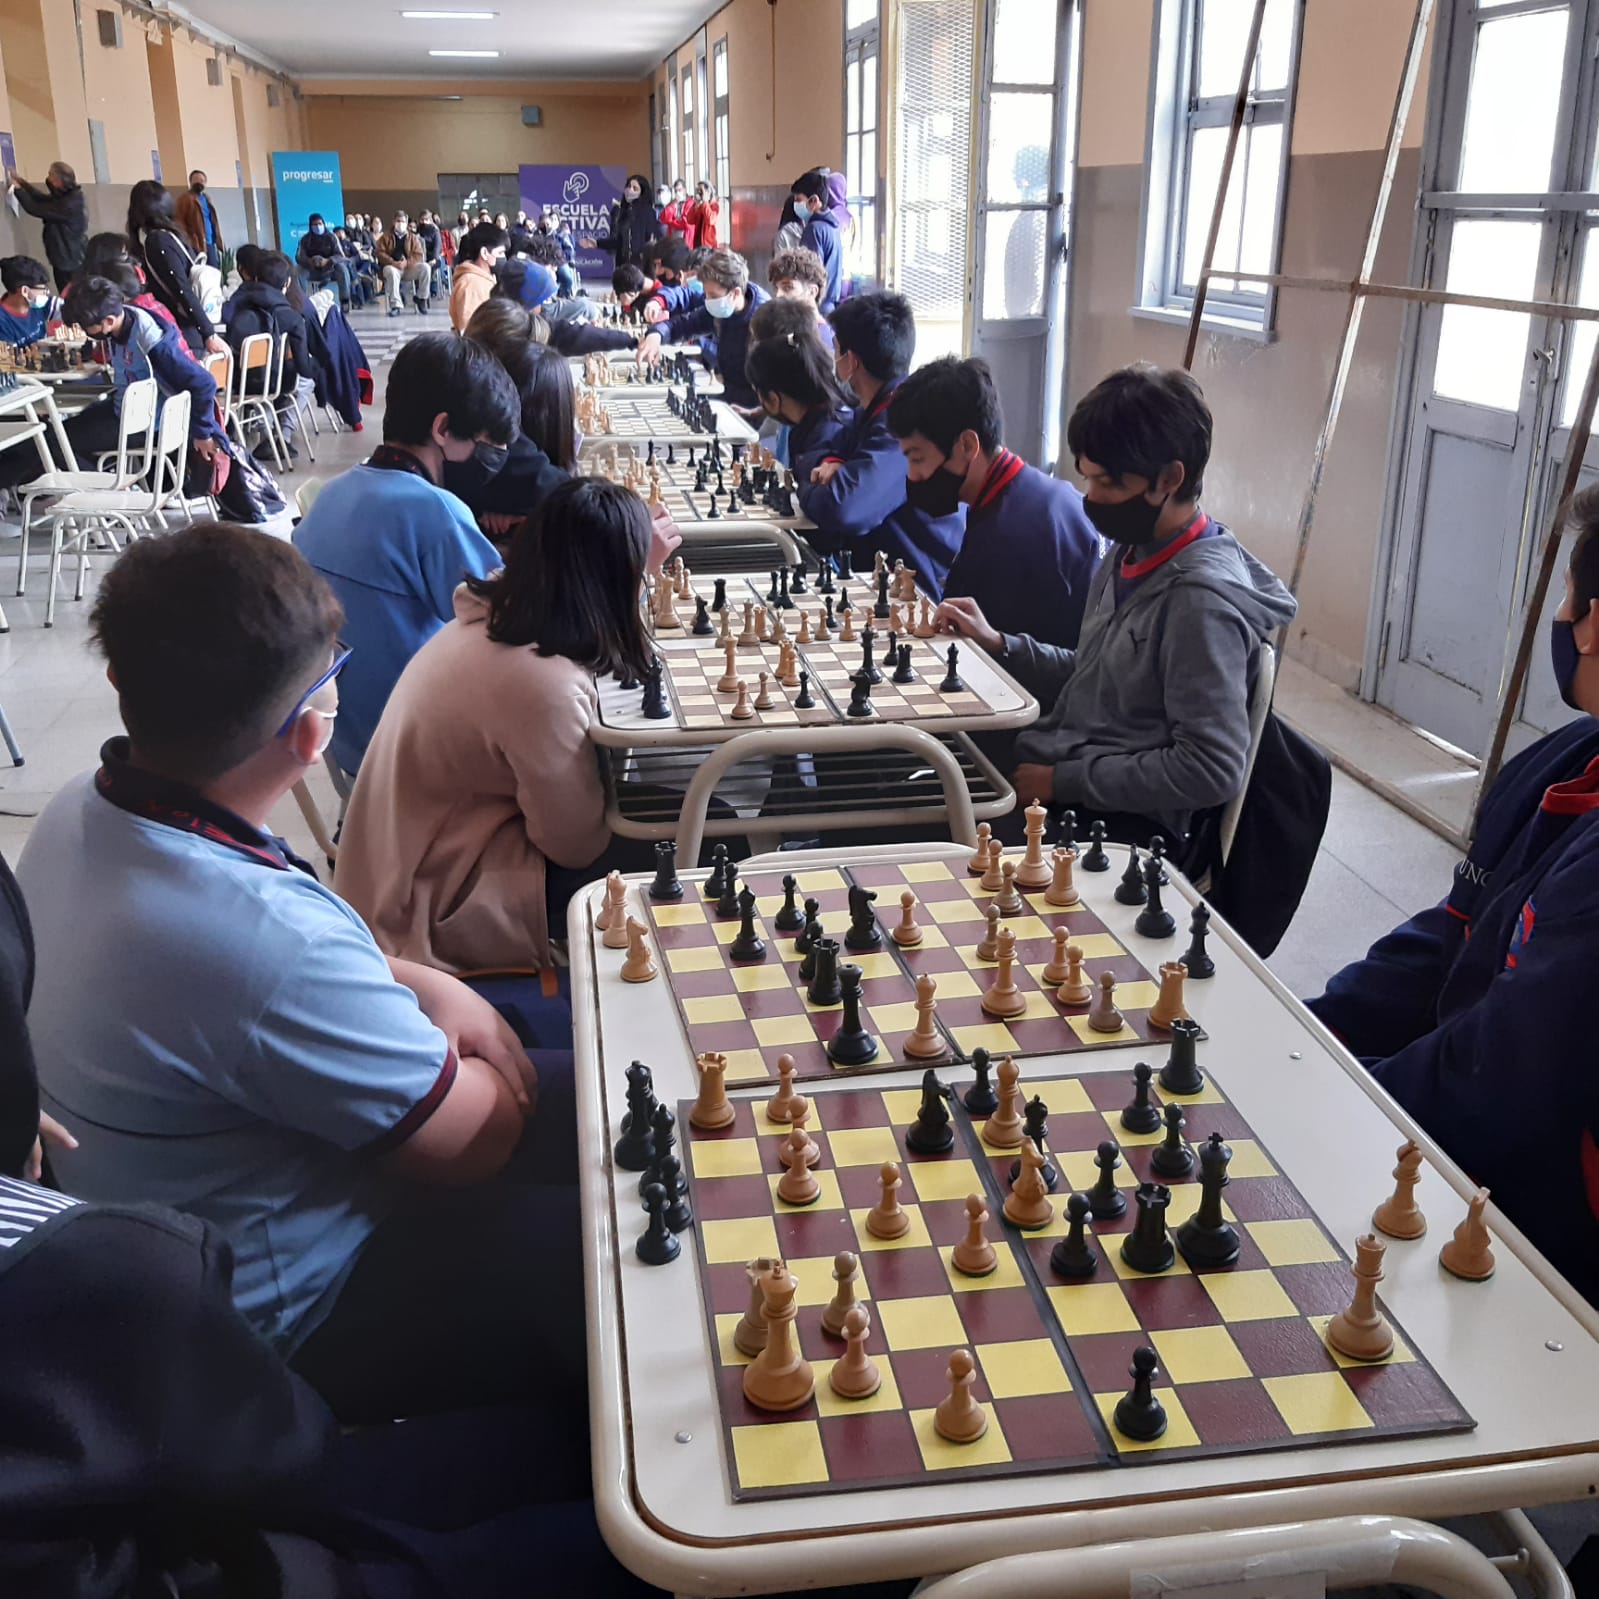 Gran inicio de los encuentros departamentales de ajedrez educativo5